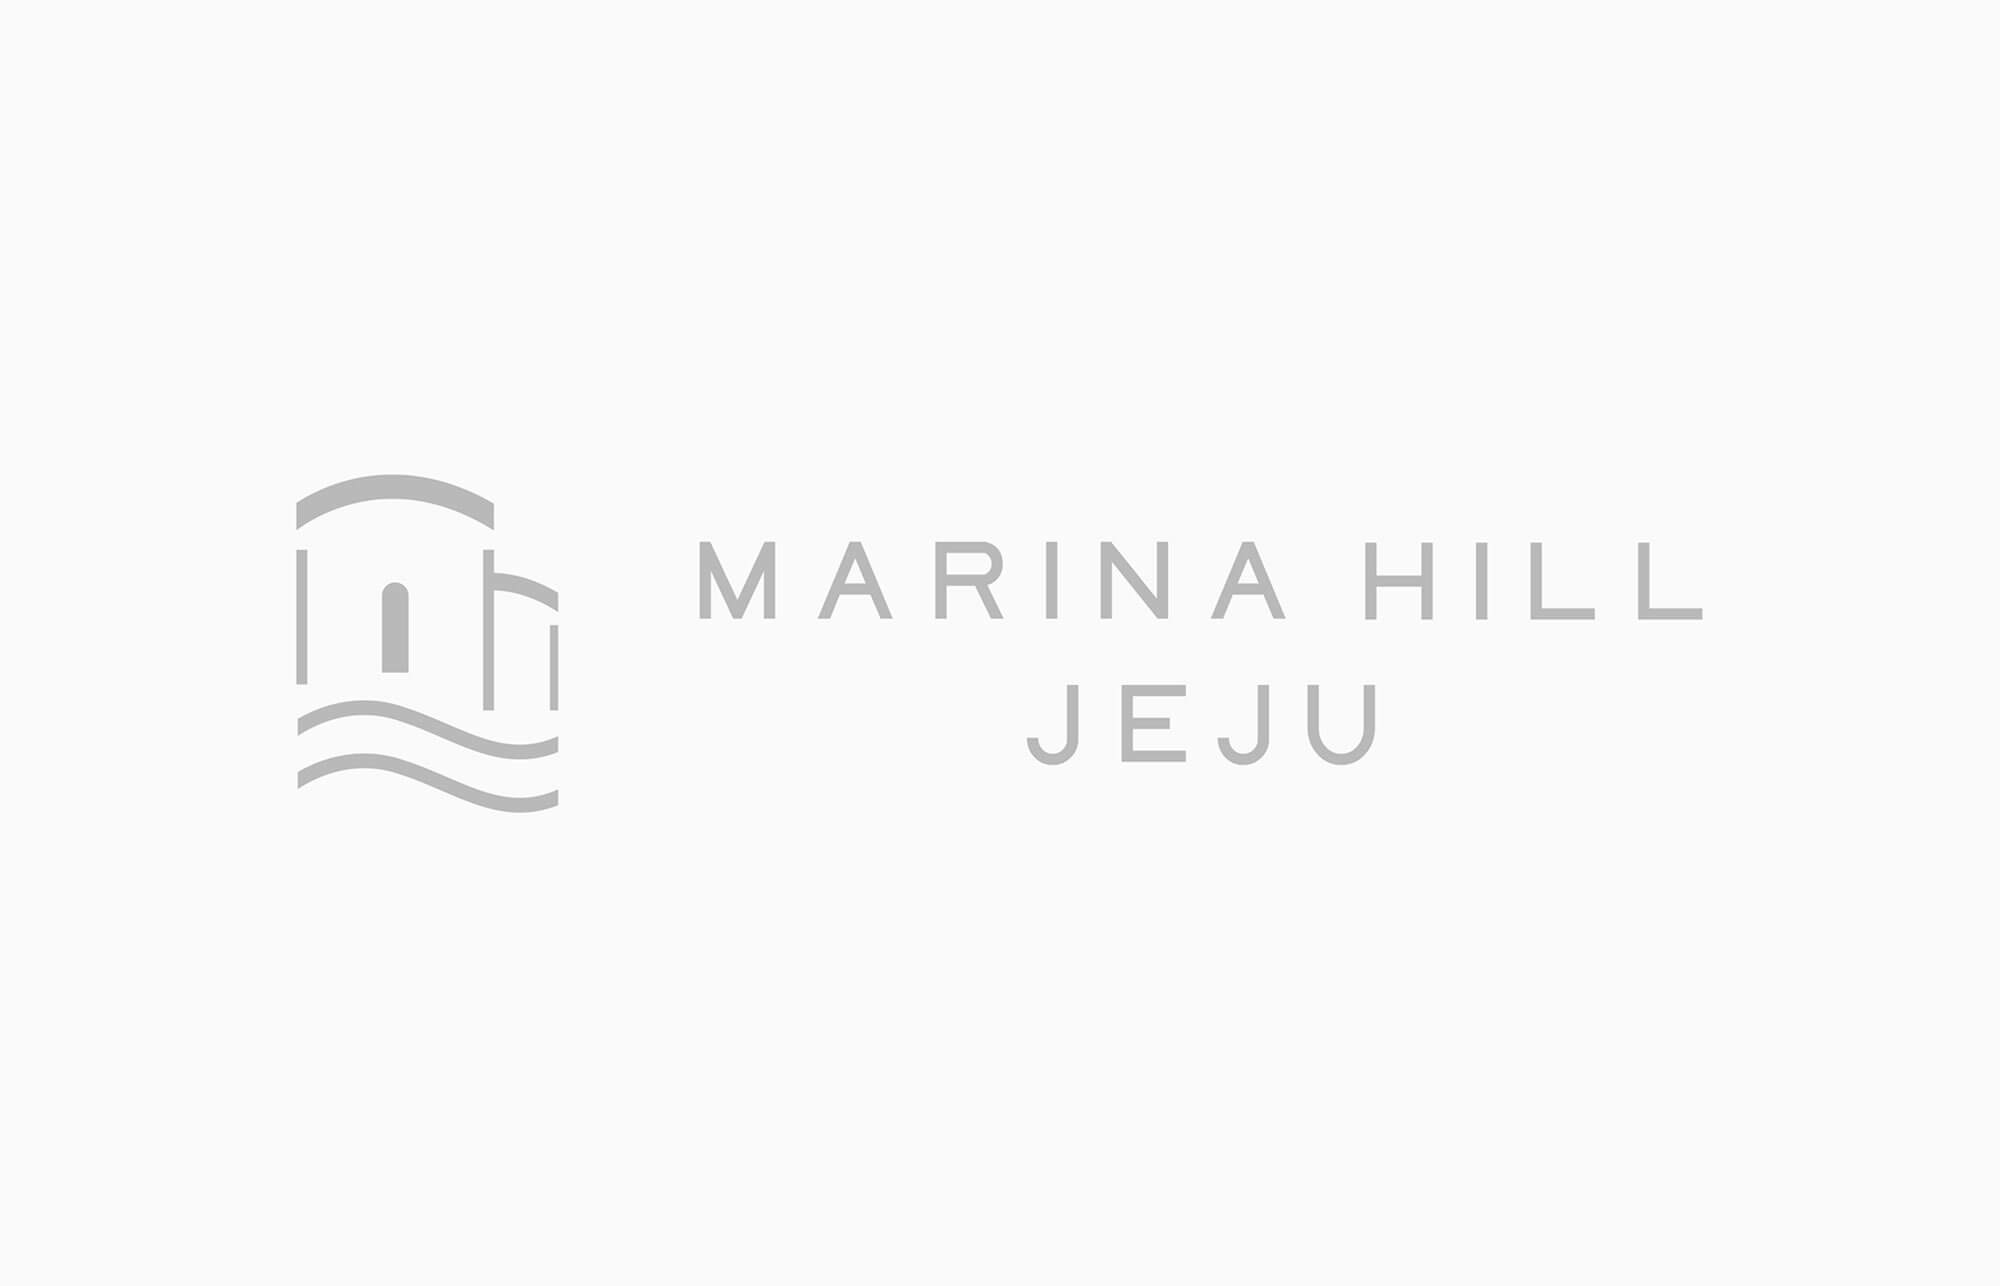 Marina Hill JEJU